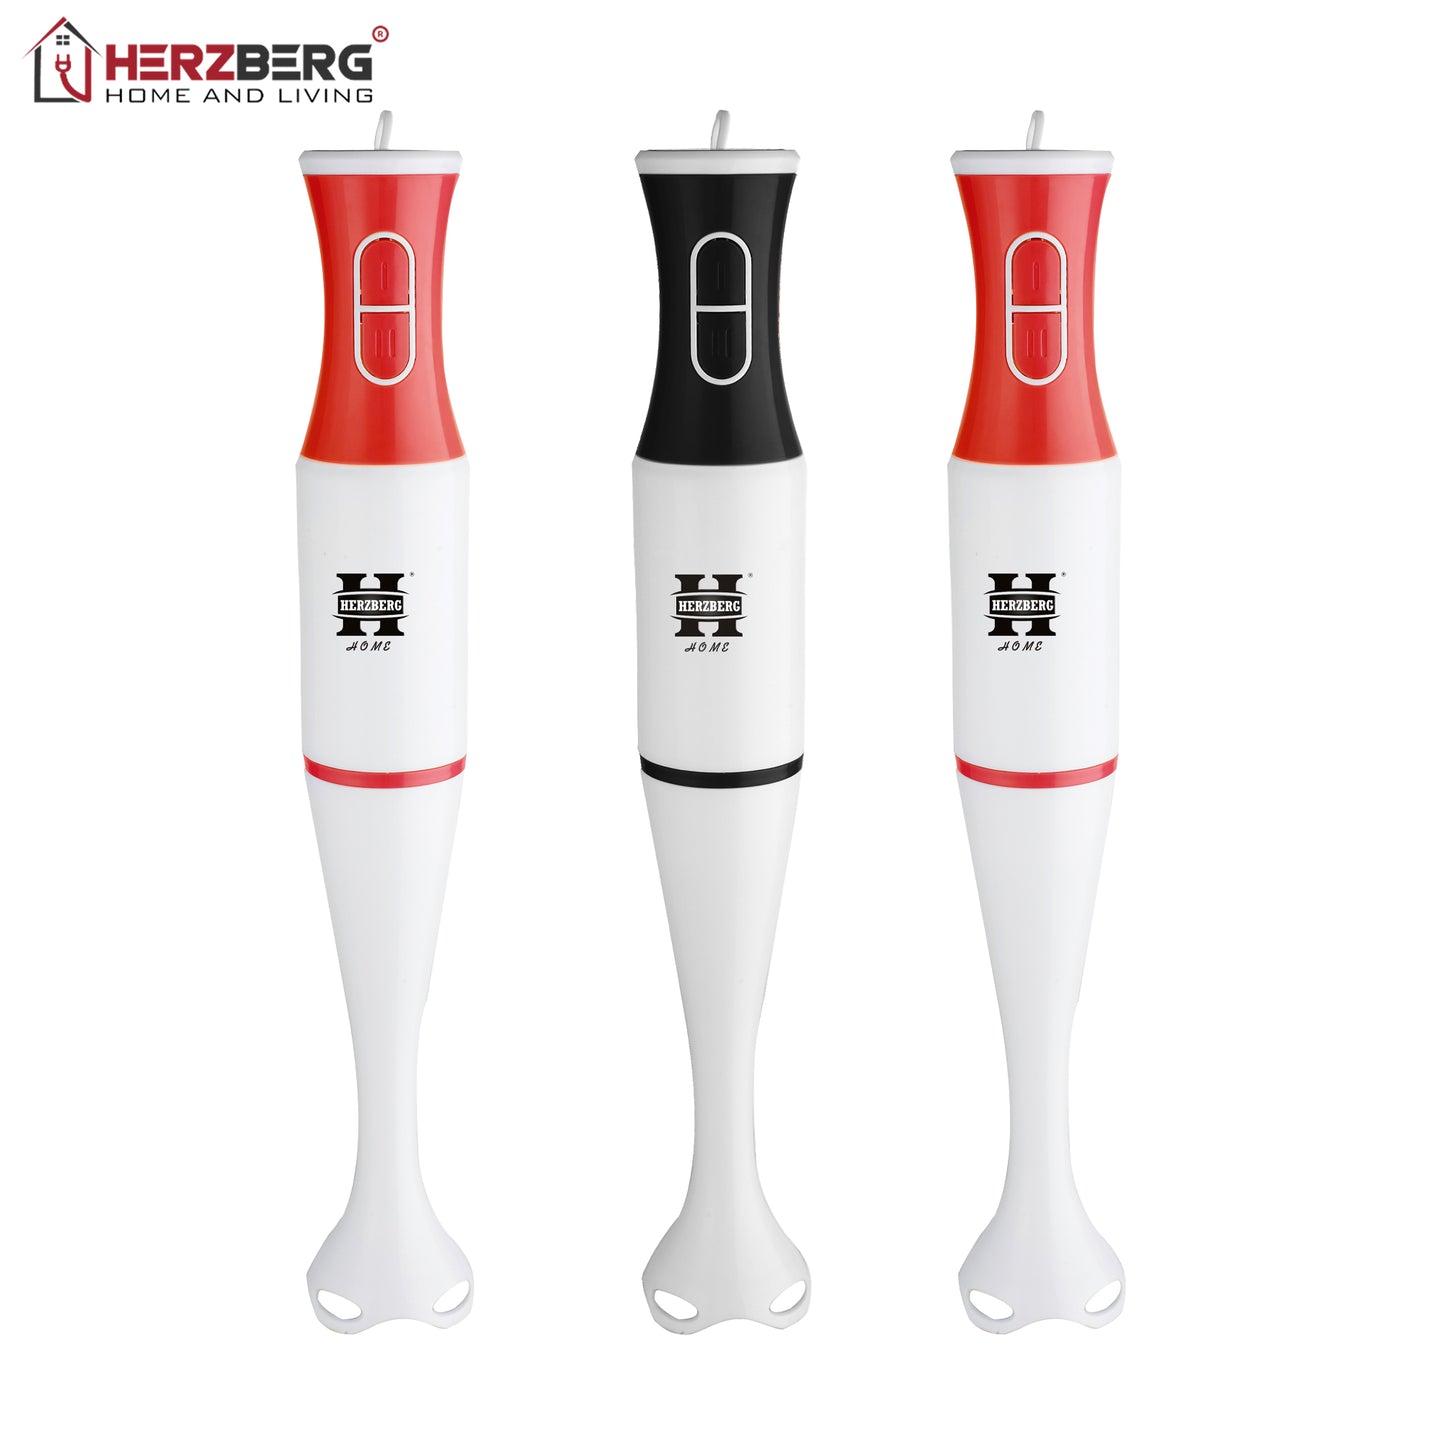 Herzberg HG-5058: Hand Blender Black